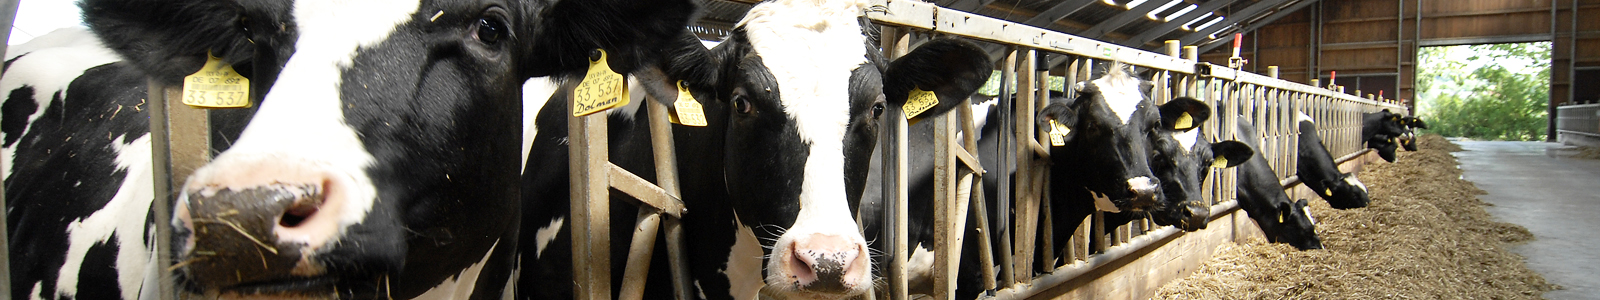 Kühe im Stall im Fressgitter ©DLR